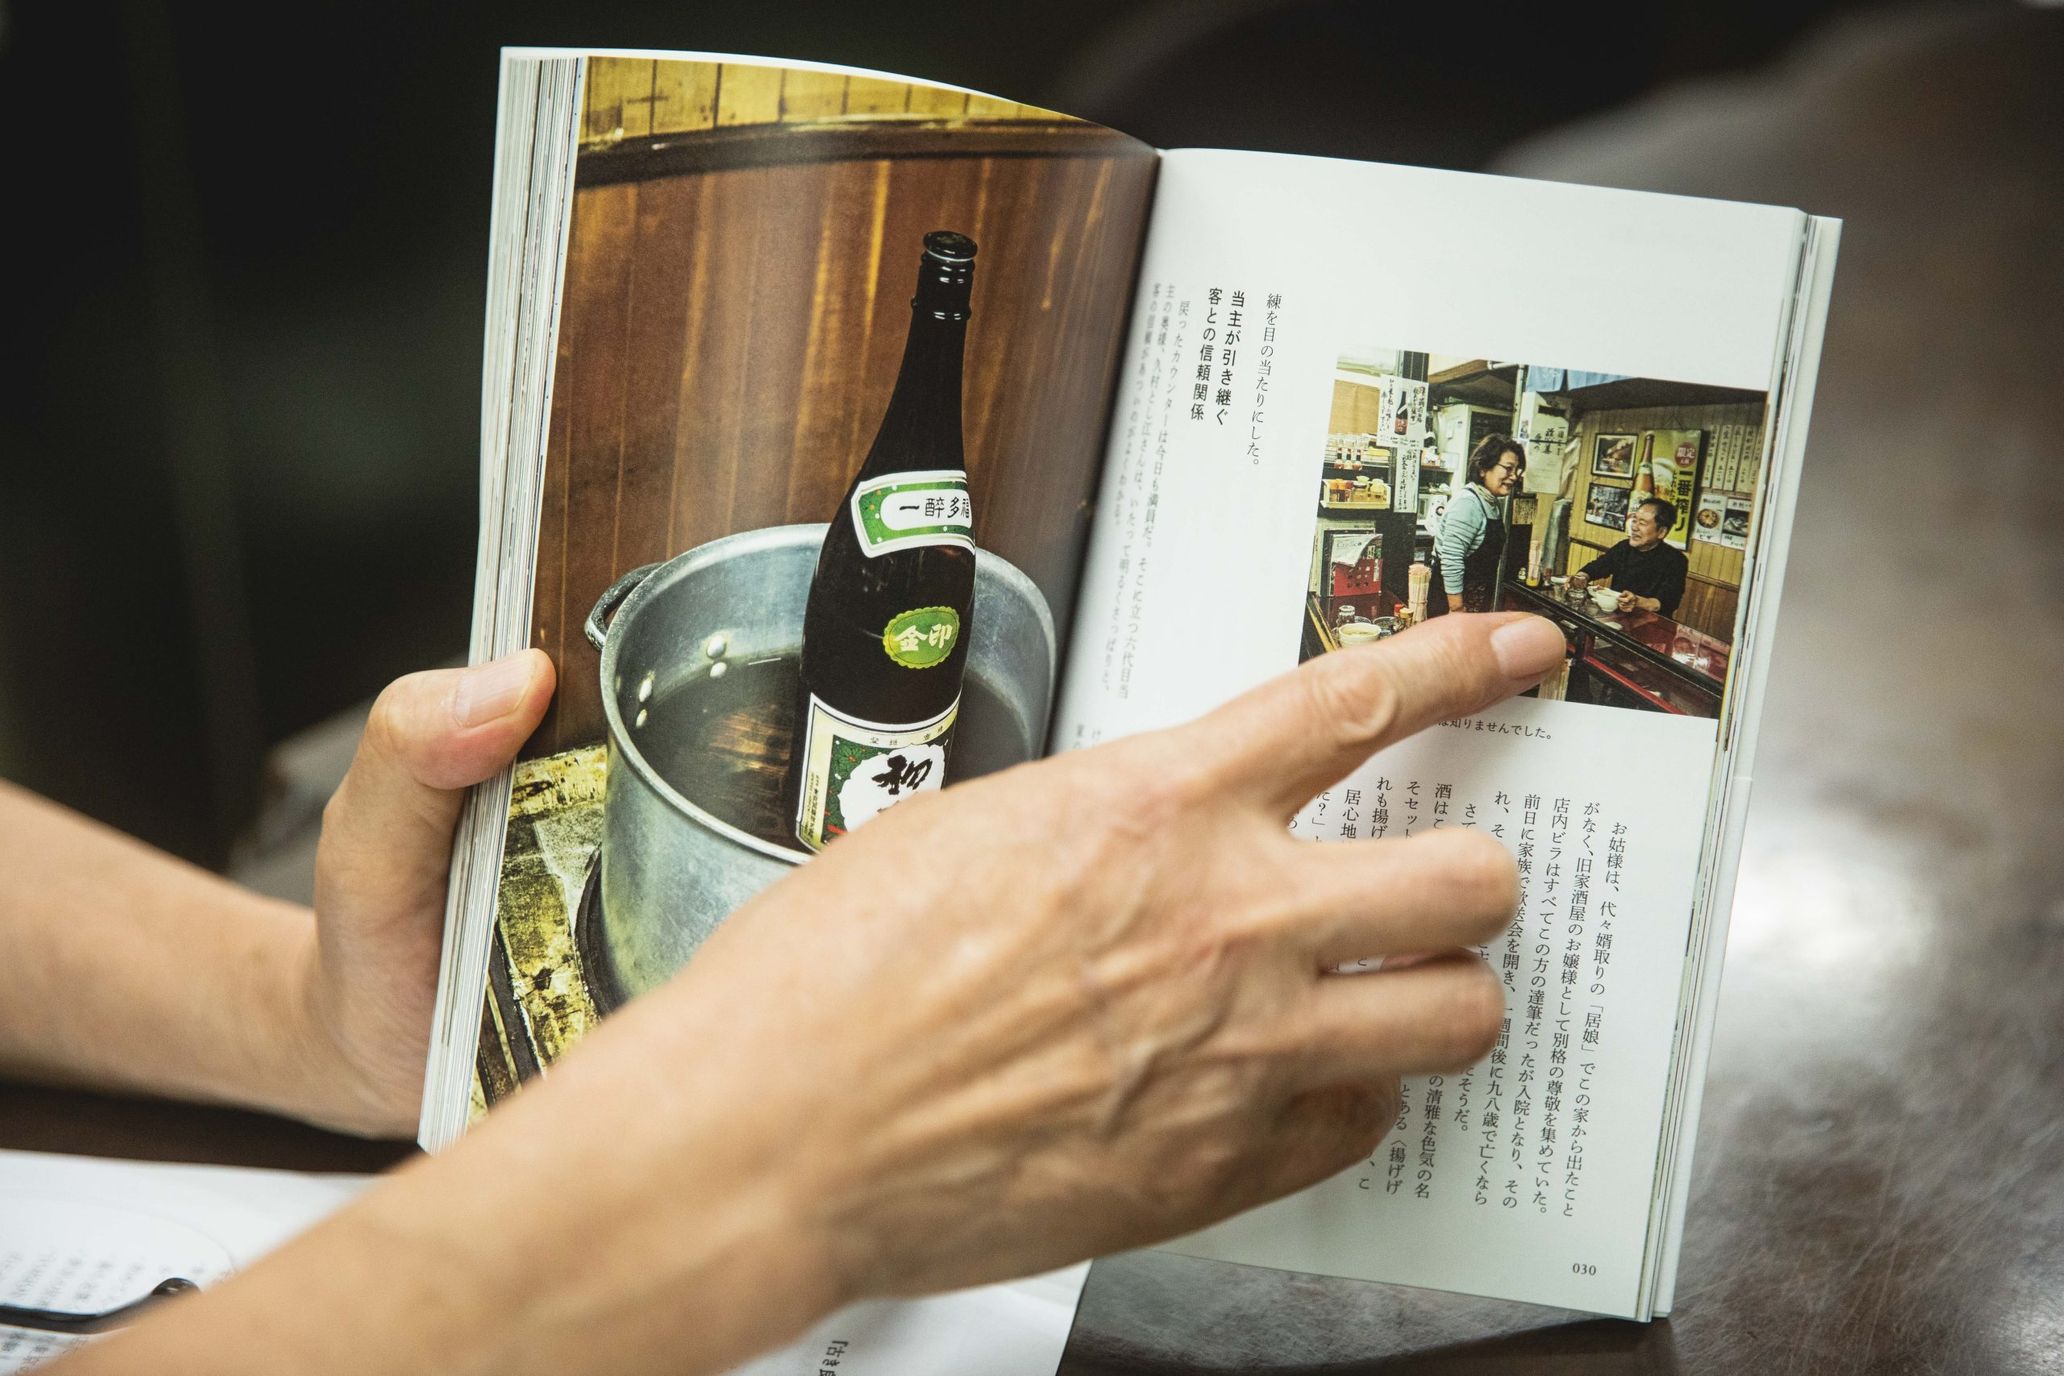 『日本居酒屋遺産』を手にそれぞれの居酒屋のエピソードや特徴を紹介していただいた Photography Kentaro Oshio 